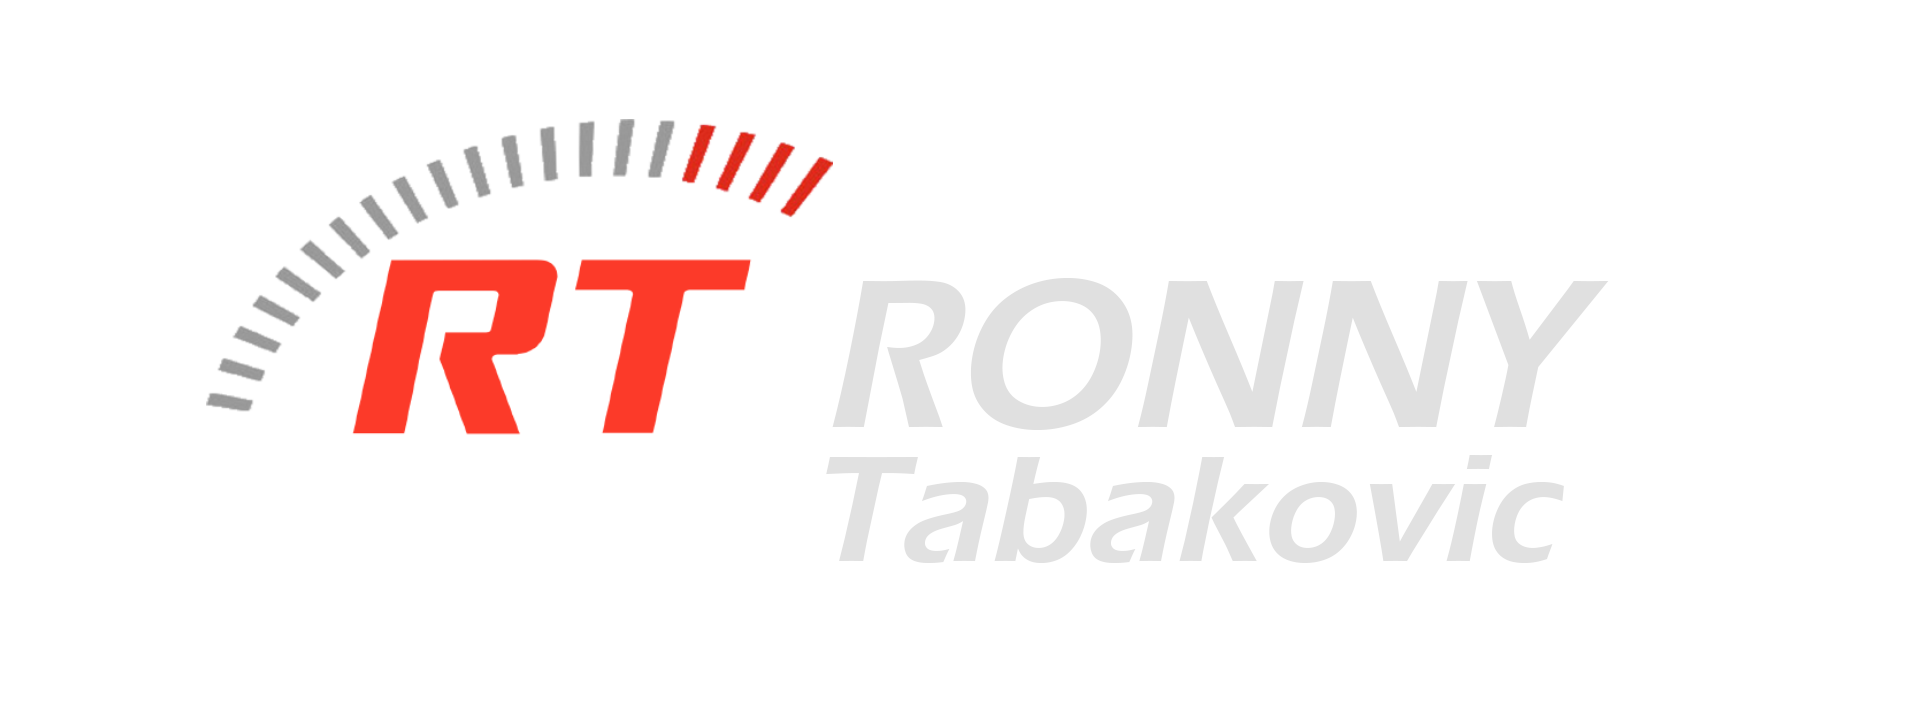 Ronny Tabakovic